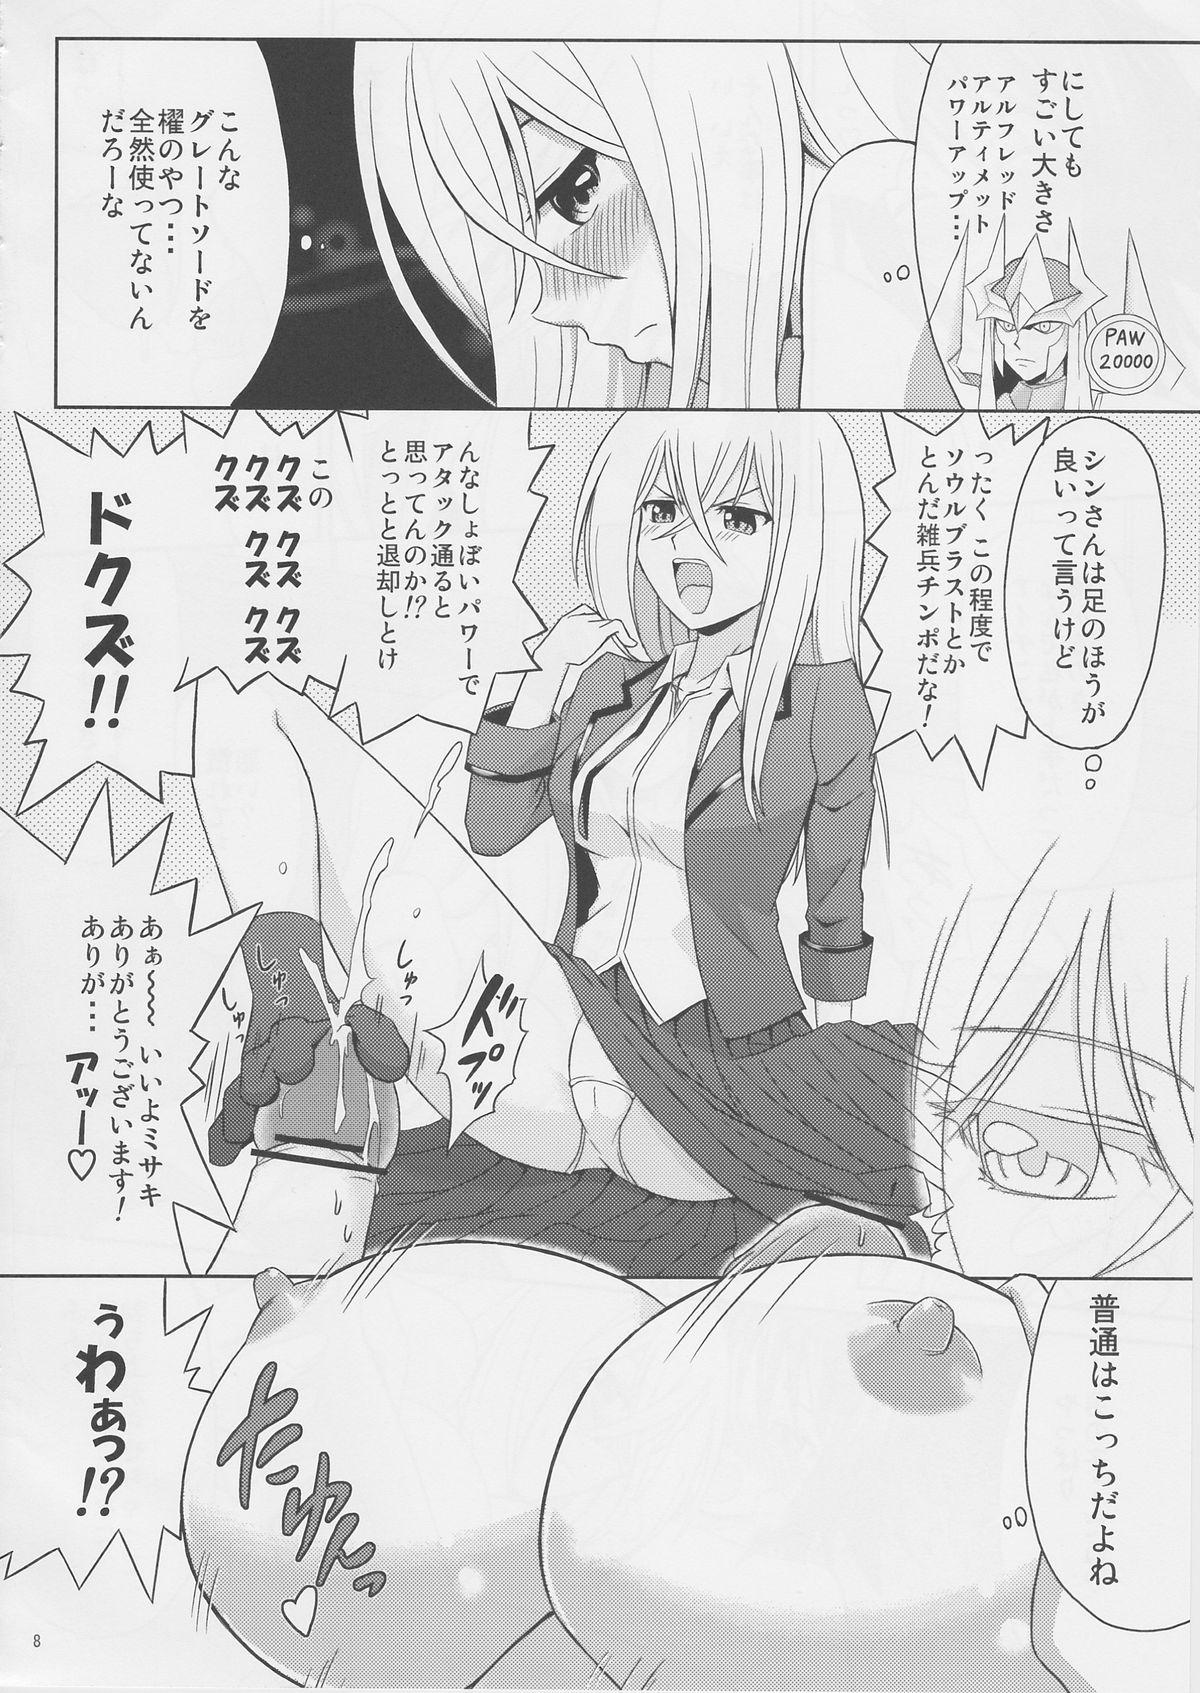 Metendo Tsuki no Megami to Mayoi Inu - Cardfight vanguard Mmd - Page 8